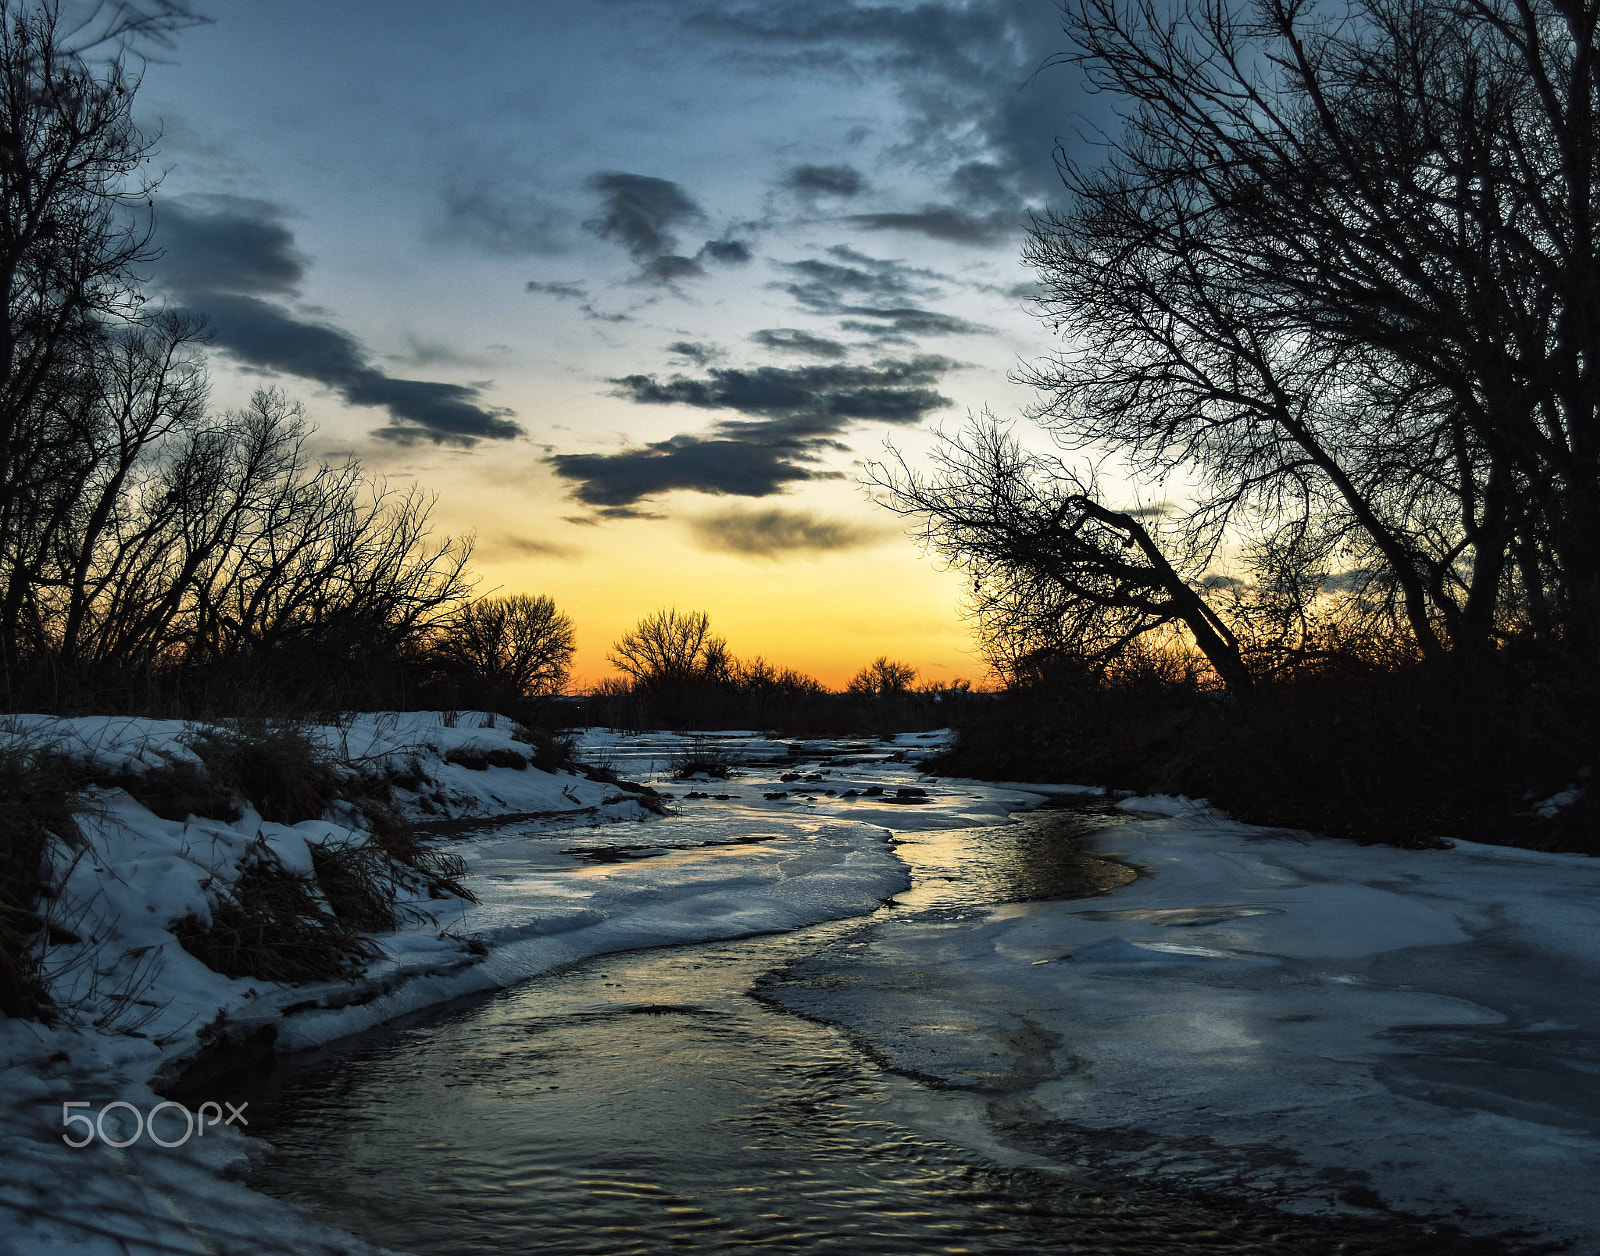 Nikon D5500 + Nikon AF-S DX Nikkor 18-55mm F3.5-5.6G VR sample photo. Winter river sunset photography